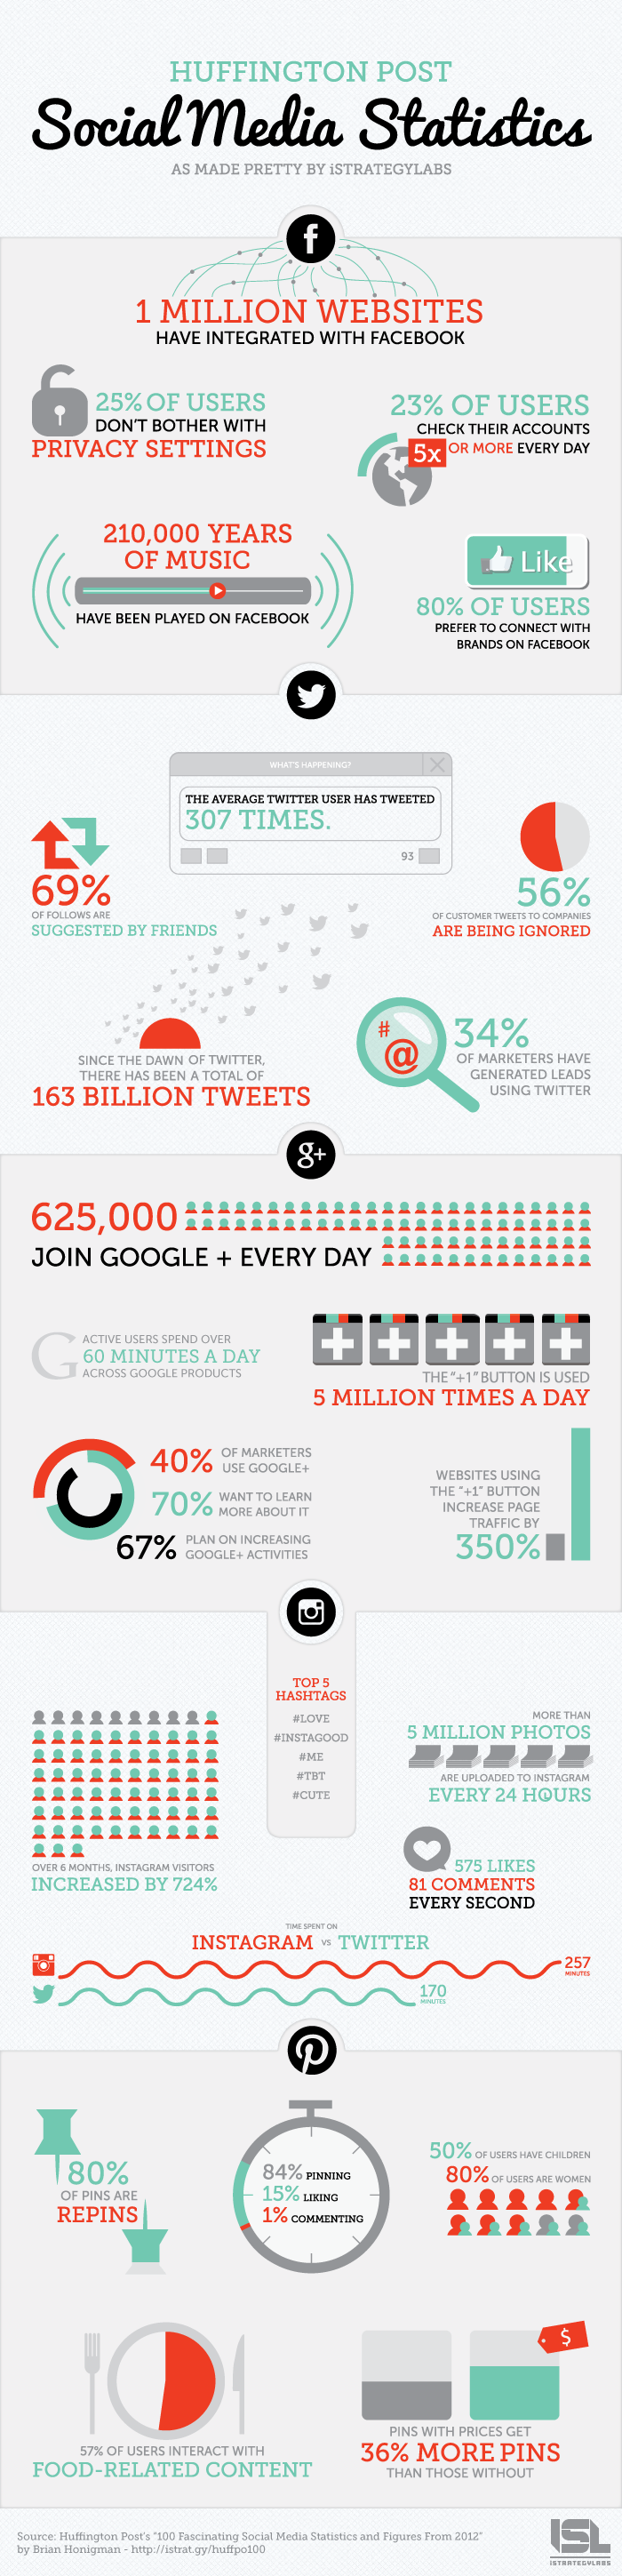 Social Media Statistics 2013